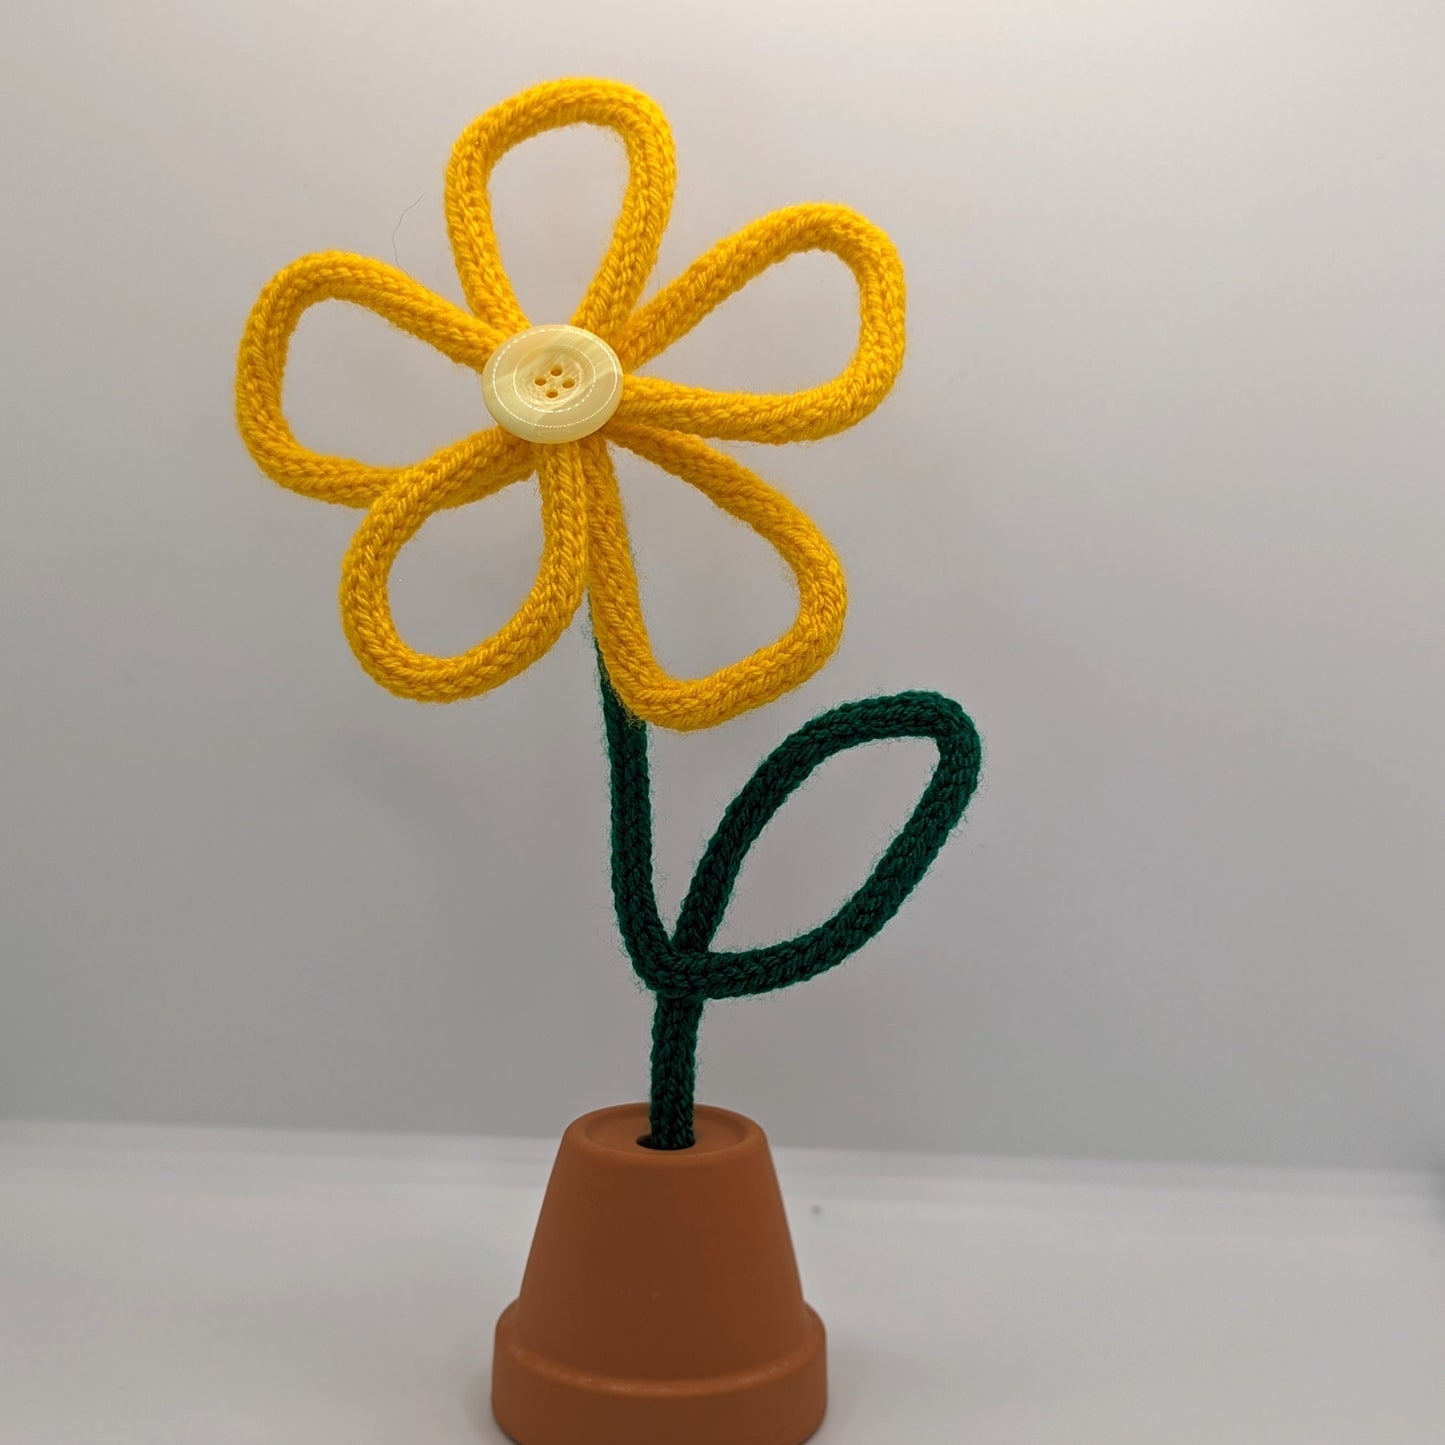 Daisy wire flower stem